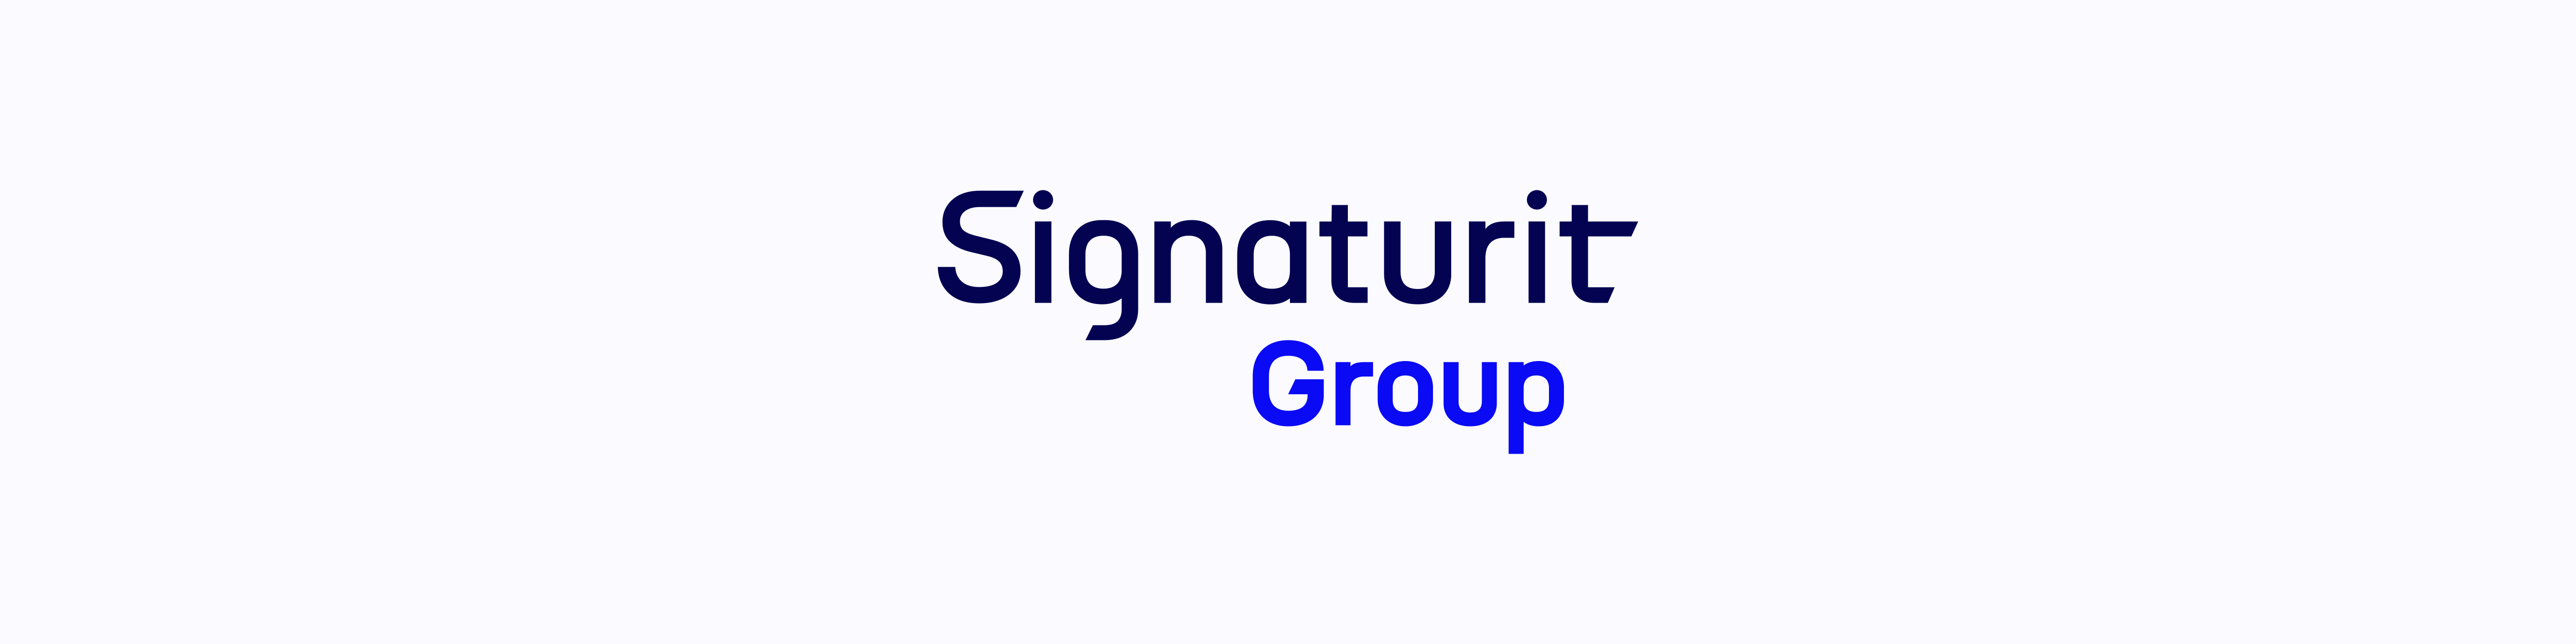 Signaturit Group clôture son premier semestre avec une croissance à deux chiffres